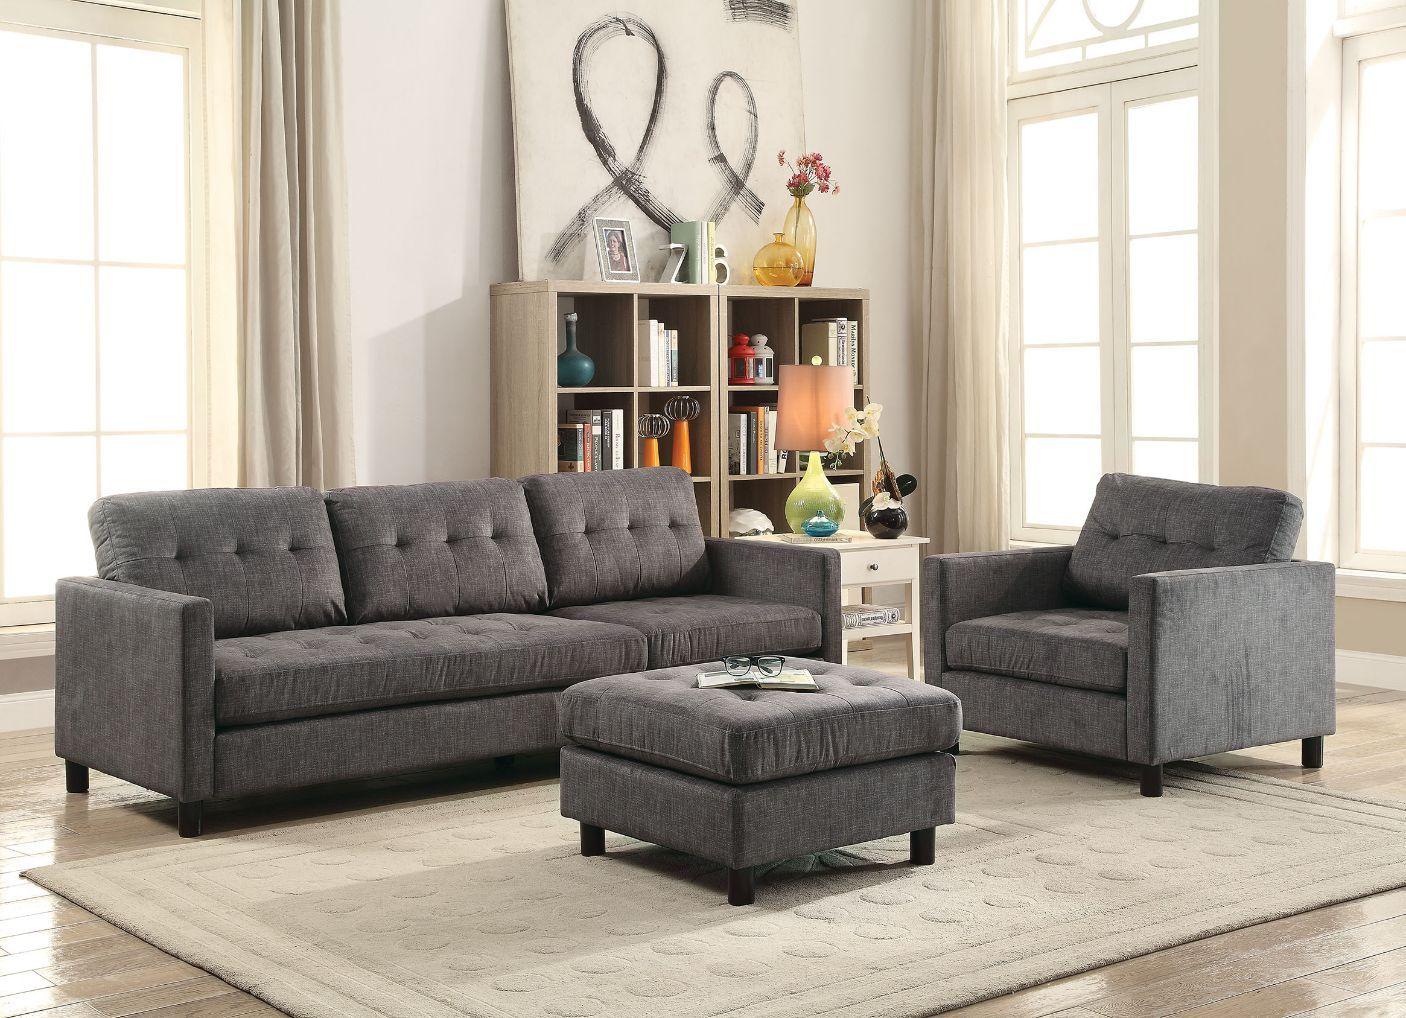 

    
Acme Furniture Ceasar Sectional Sofa Set Gray 53315-4pcs
